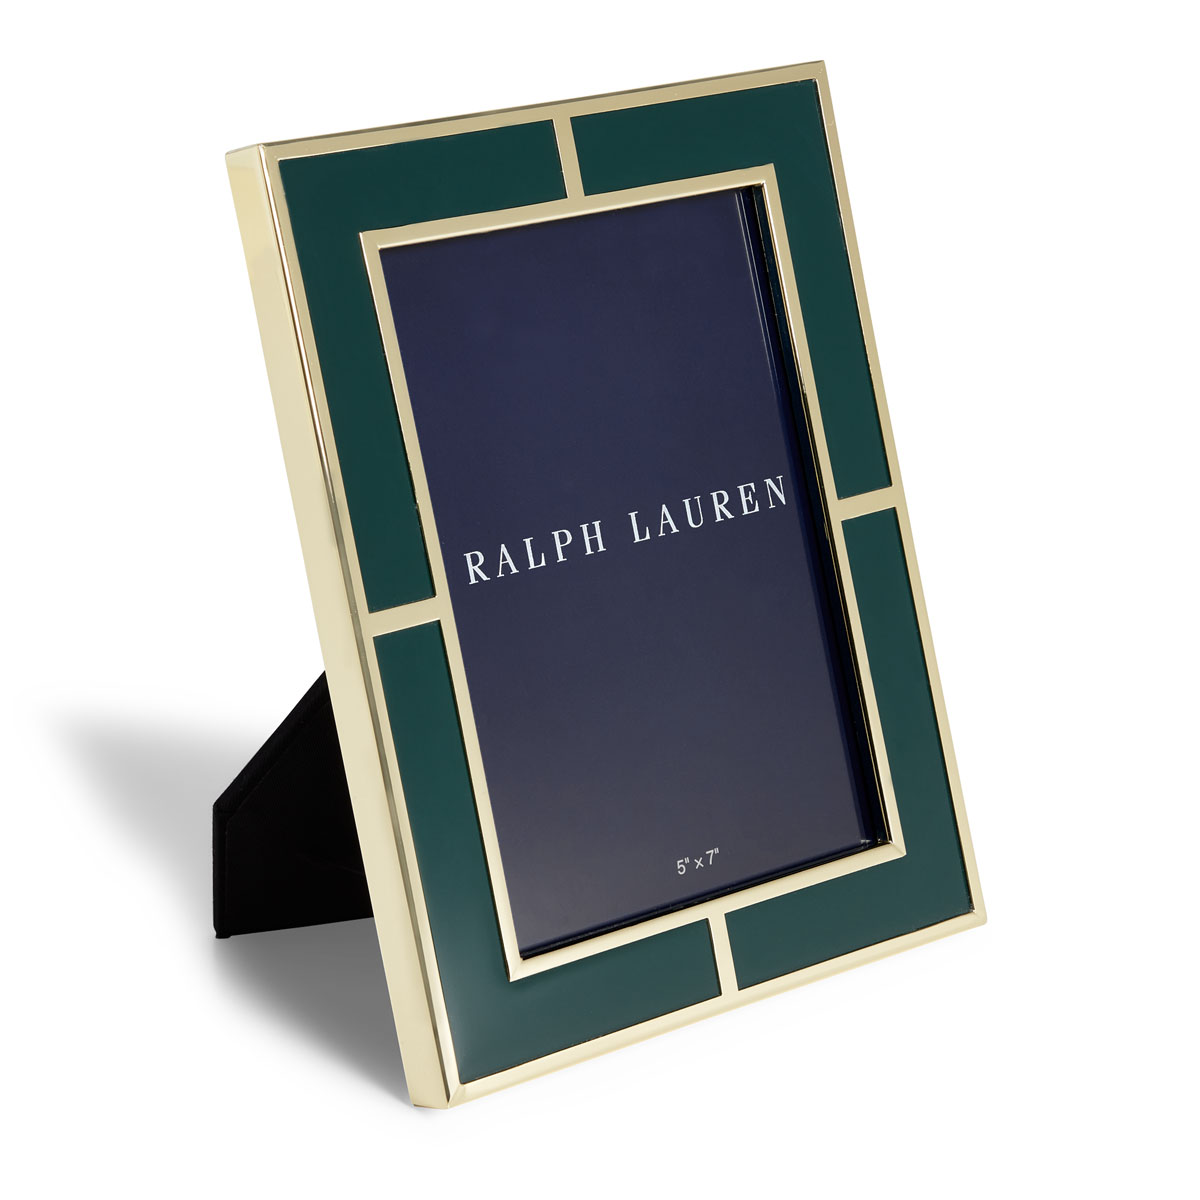 Ralph Lauren Classon 5"x7" Frame, Green